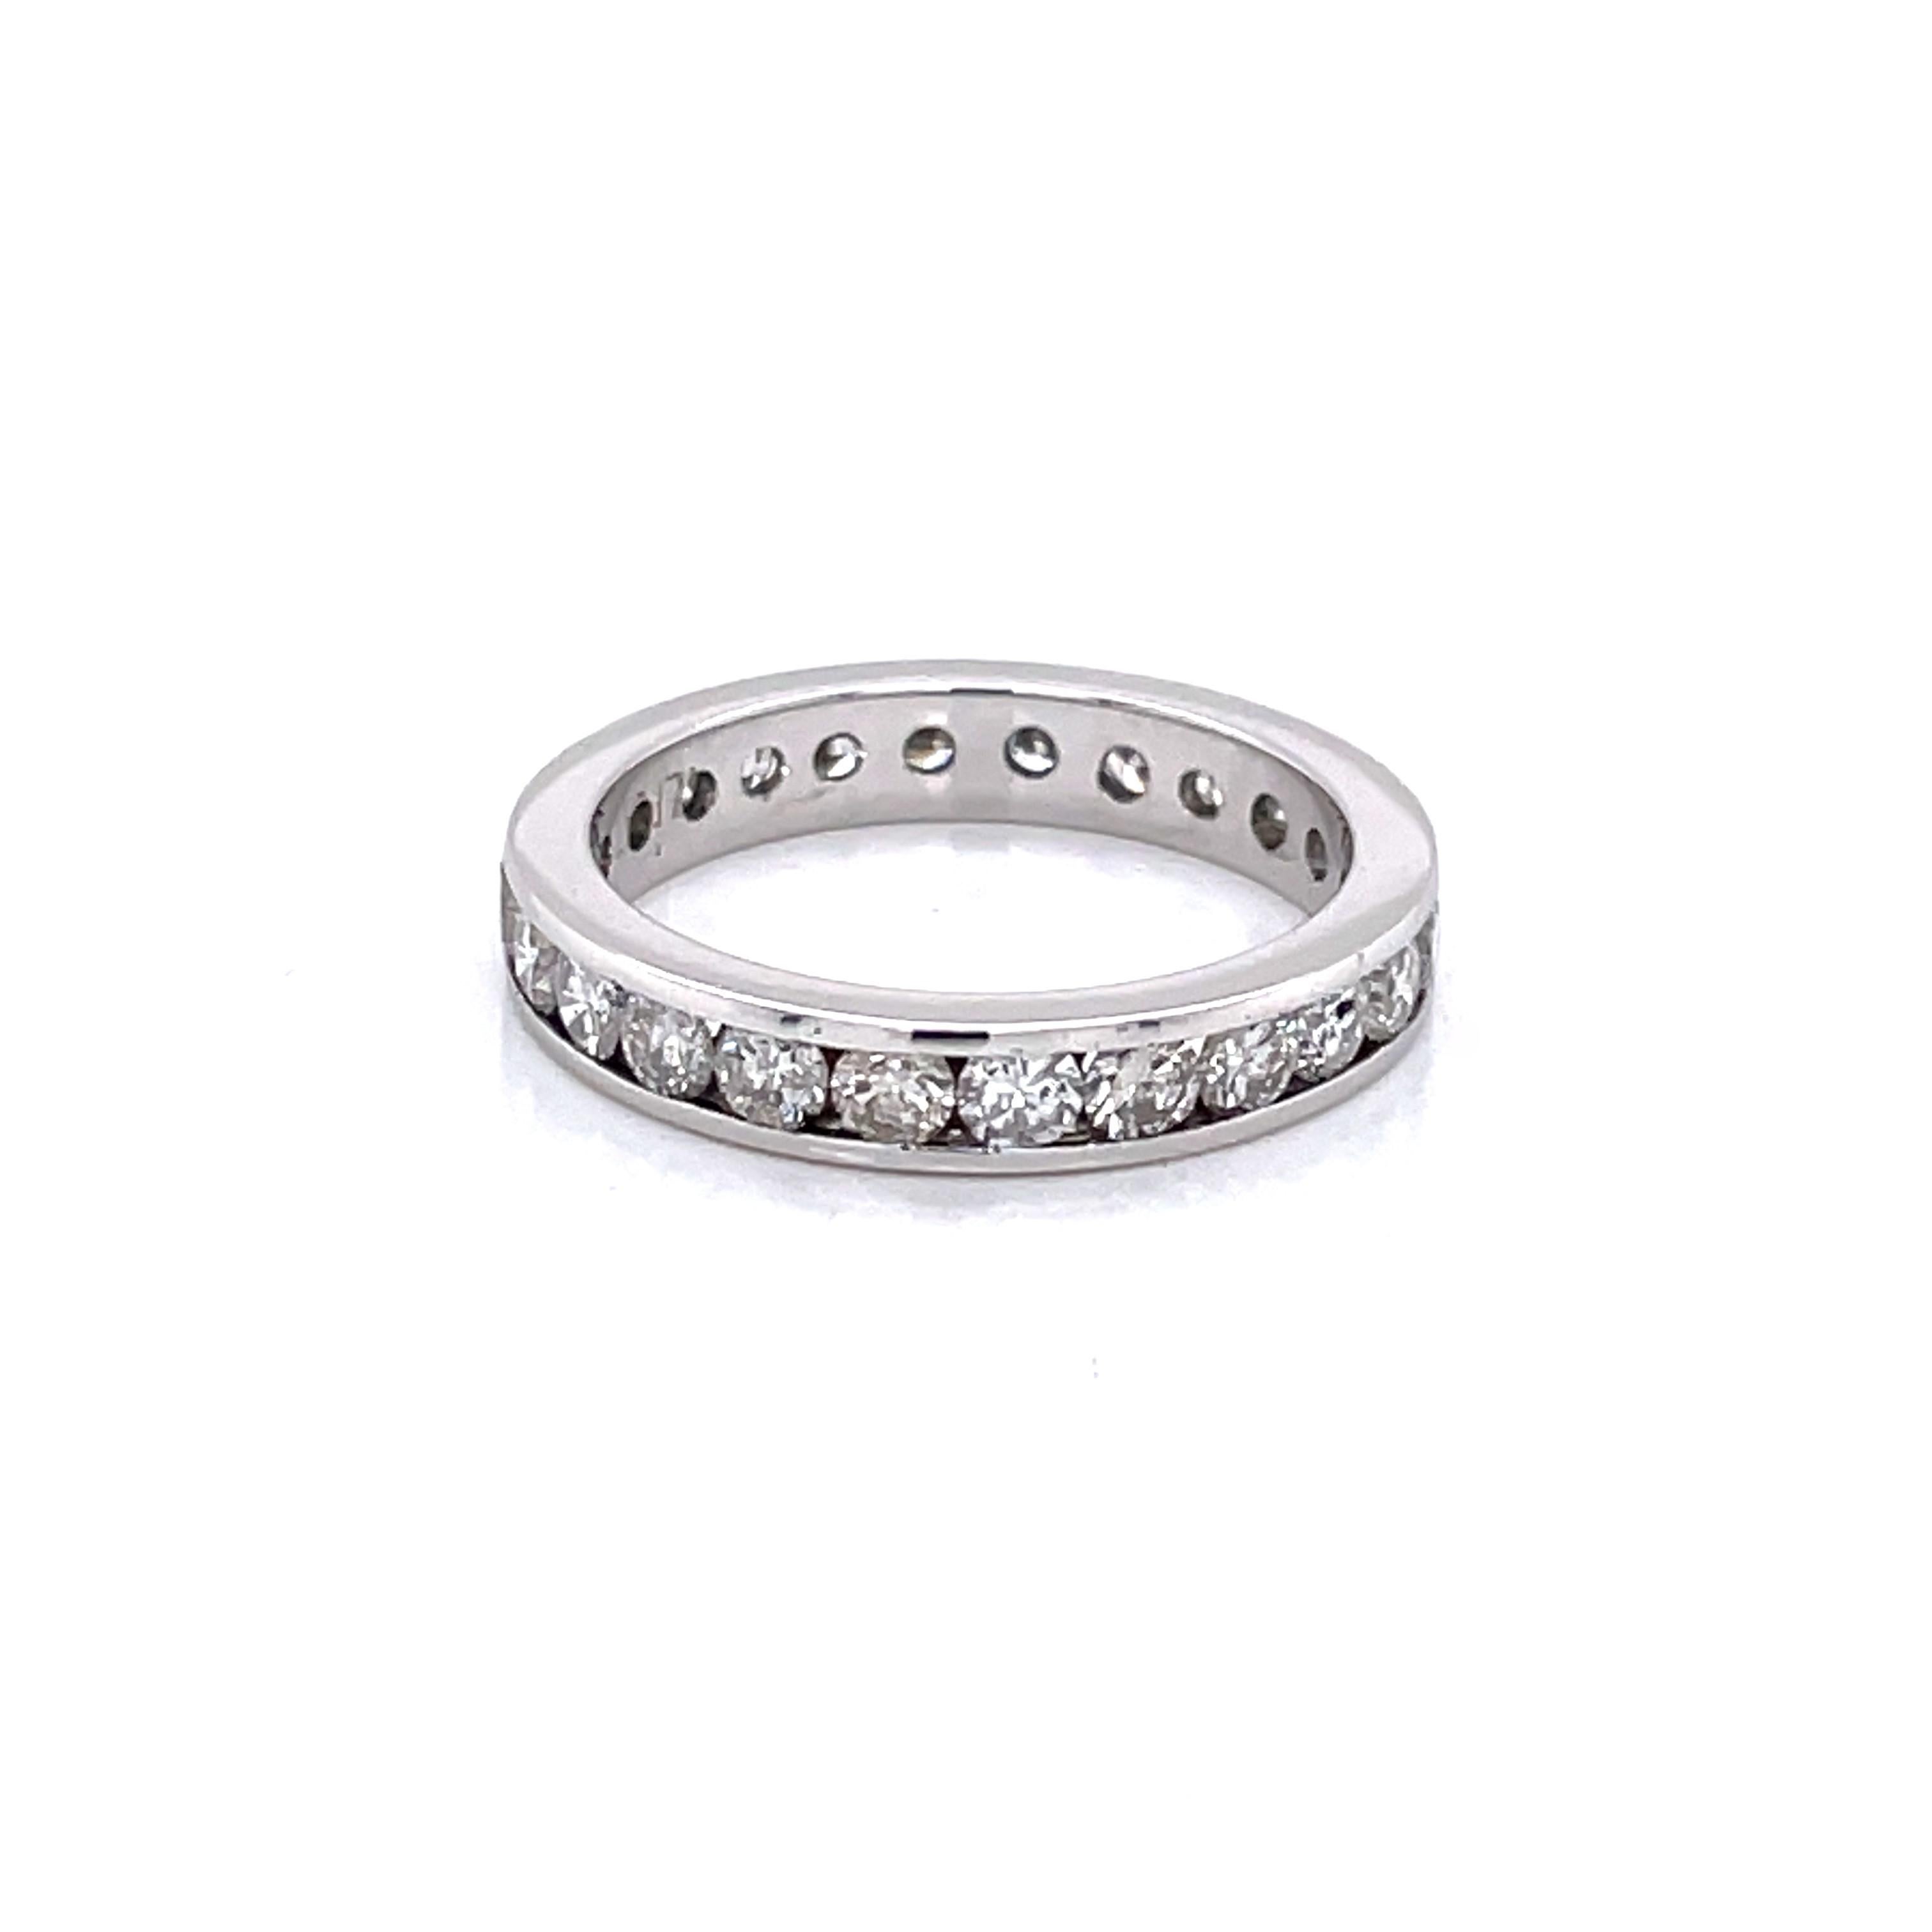 Vierundzwanzig runde, facettierte H/VS-Diamanten von 0,05 Karat (Gesamtgewicht 1,20 Karat) sind entlang dieses Platinbandes endlos in Kanäle gefasst, um ewige Liebe zu symbolisieren.
Dieser Ring ist vielseitig und kann allein getragen werden oder